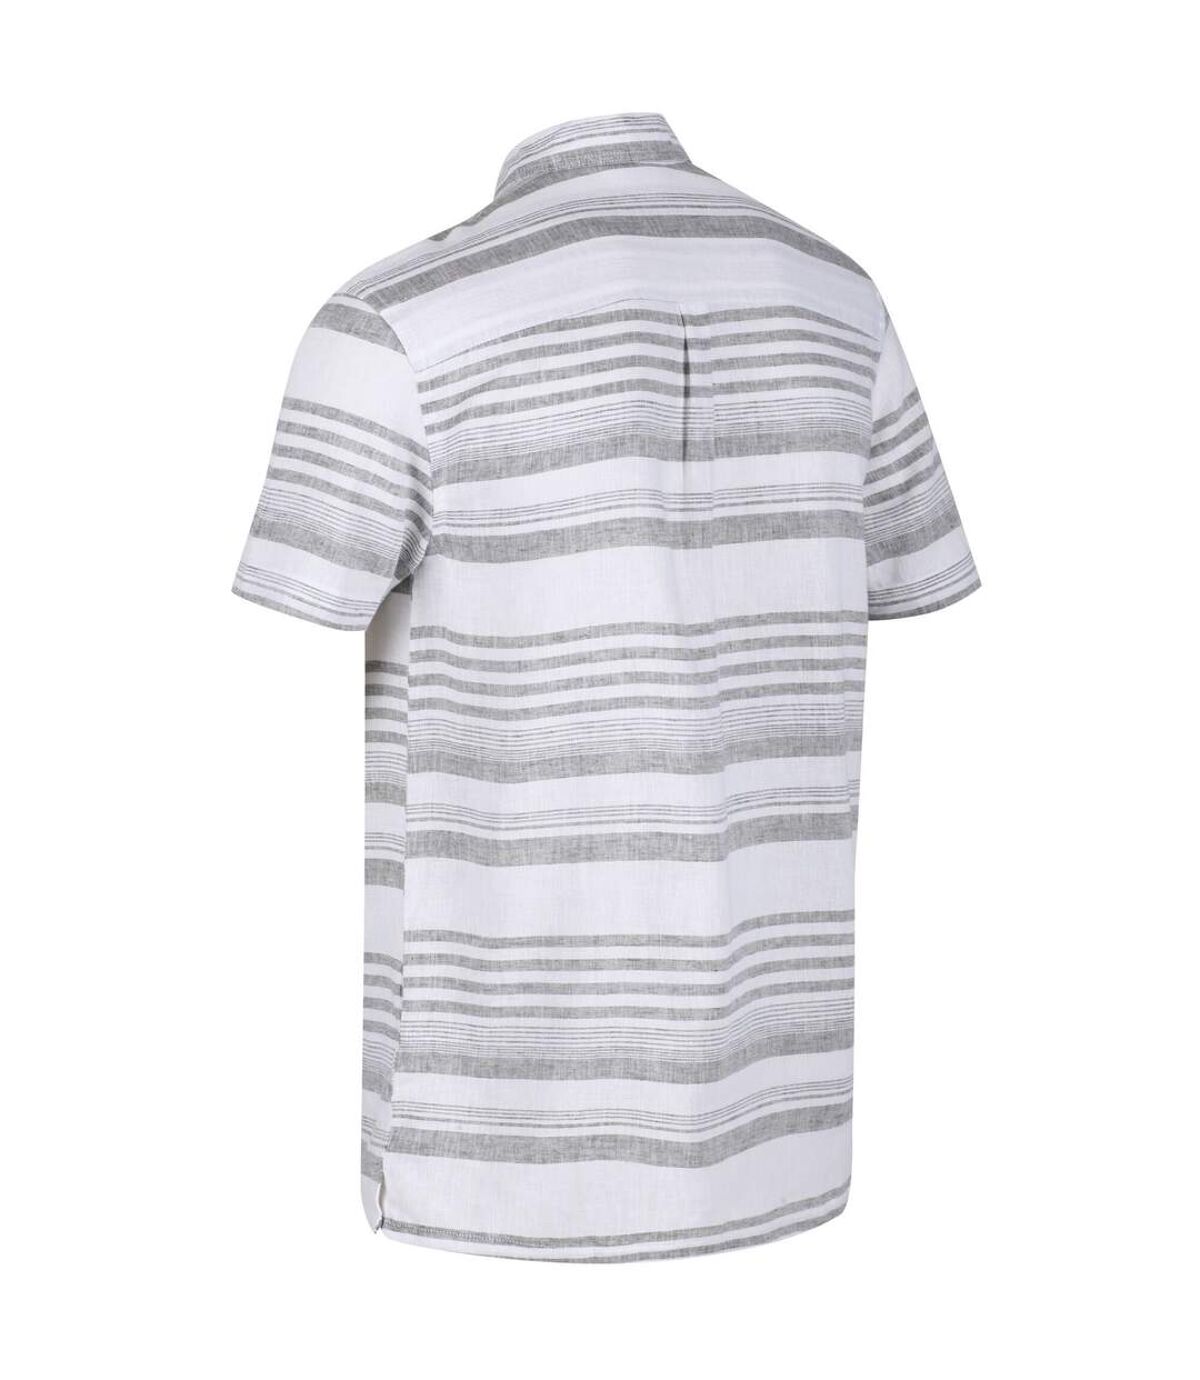 Regatta Mens Mahlon Striped Short-Sleeved Shirt (Dark Khaki) - UTRG5891